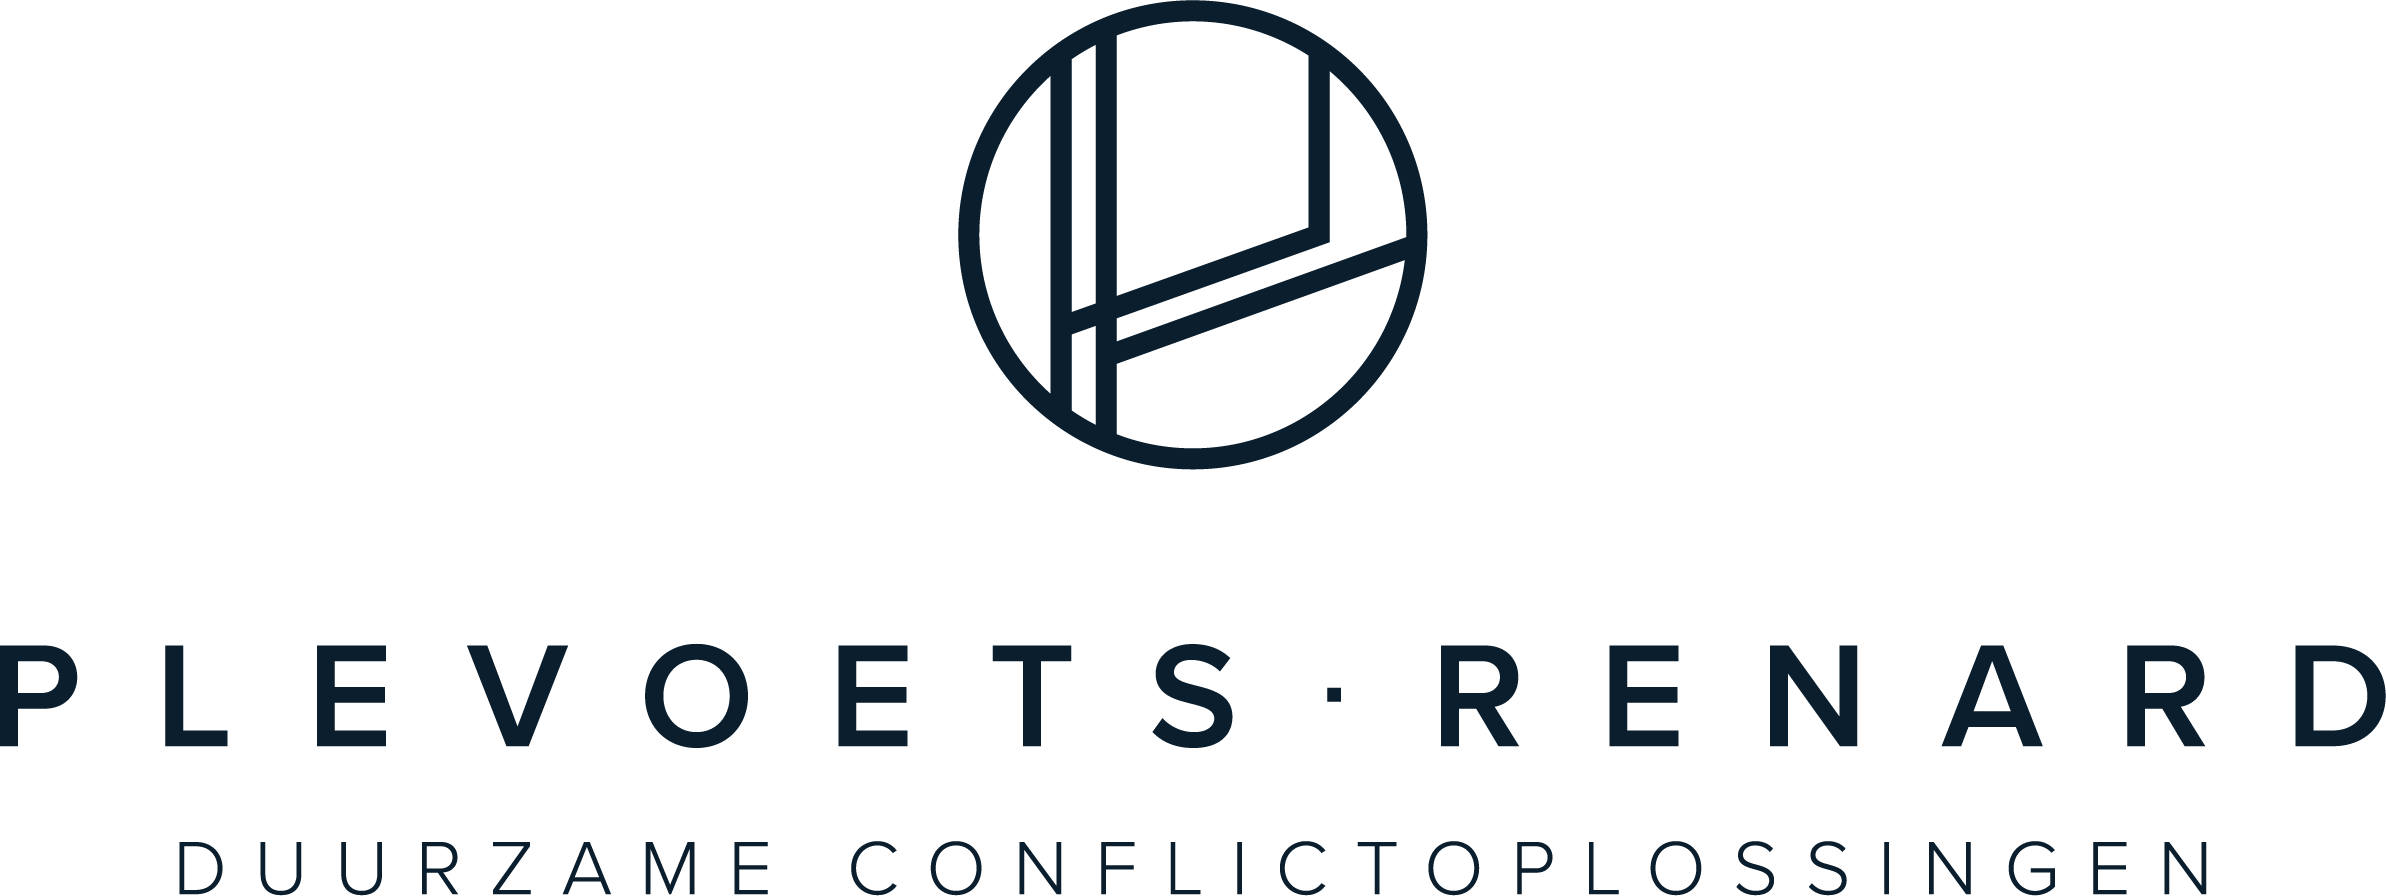 Plevoets - Renard: Duurzame conflictoplossingen